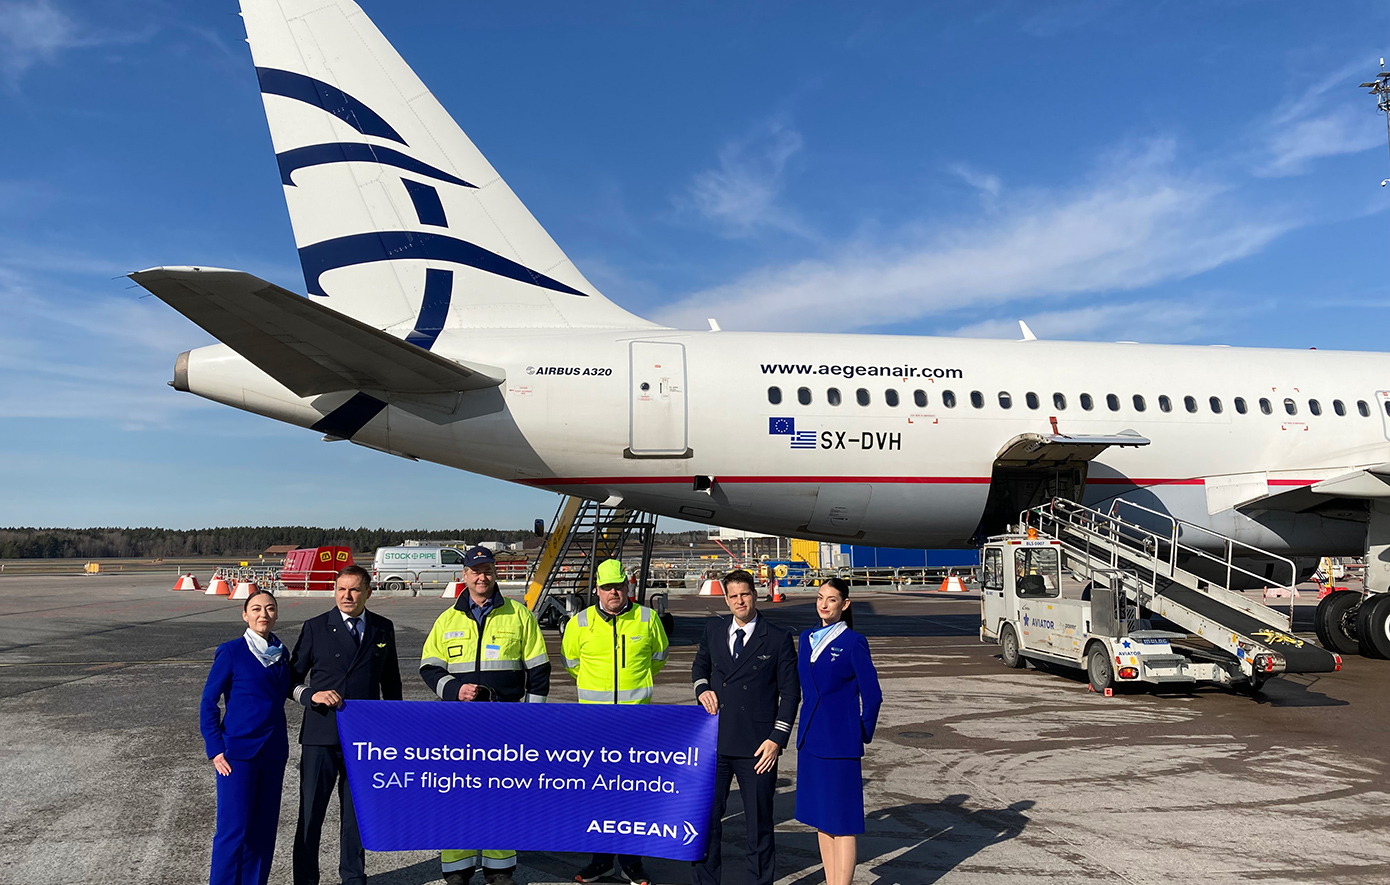 Η AEGEAN επεκτείνει το πρόγραμμα χρήσης Βιώσιμων Αεροπορικών Καυσίμων στις πτήσεις και στα αεροδρόμια της Ευρώπης